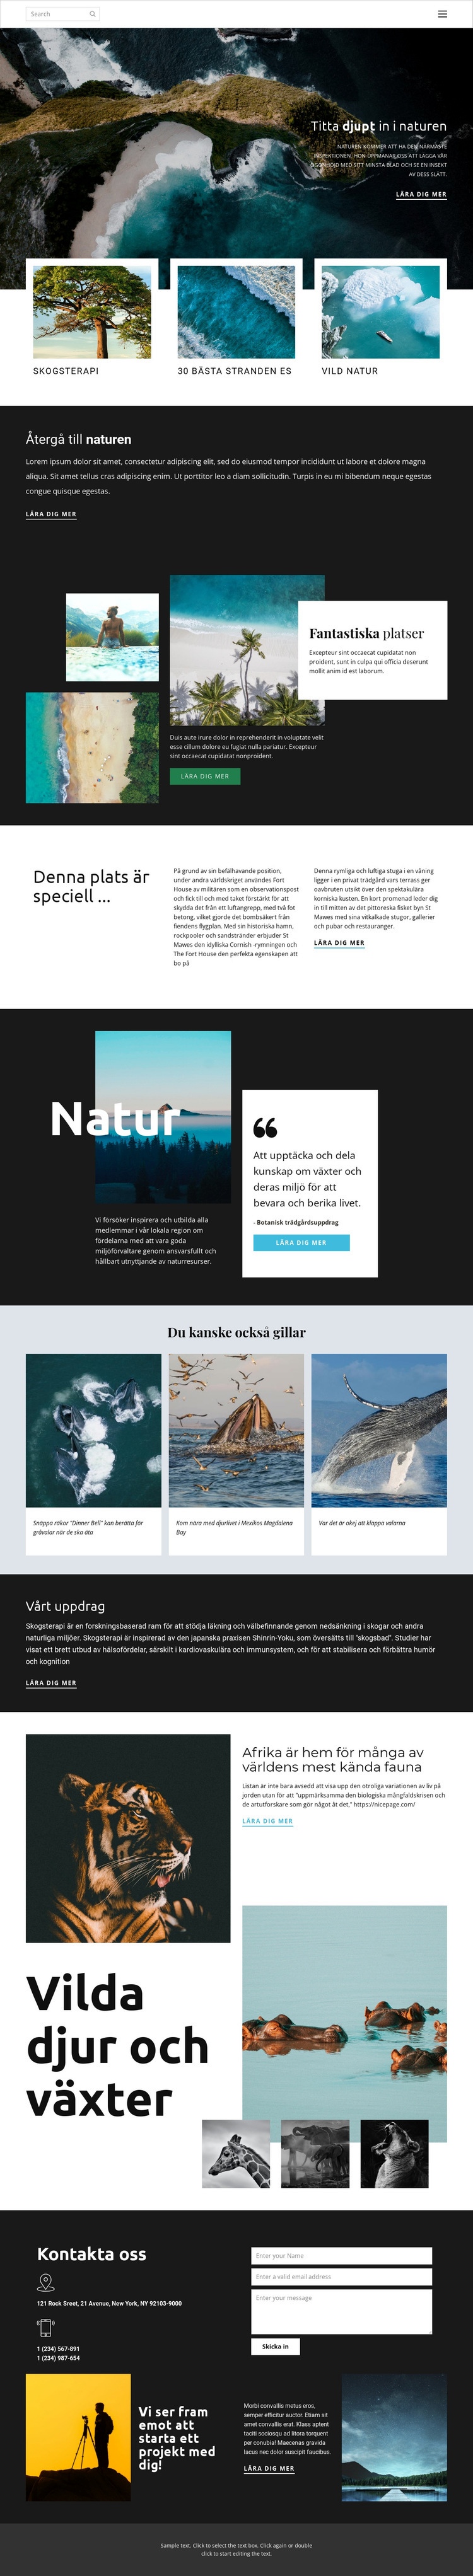 Utforska vilda djur och natur WordPress -tema